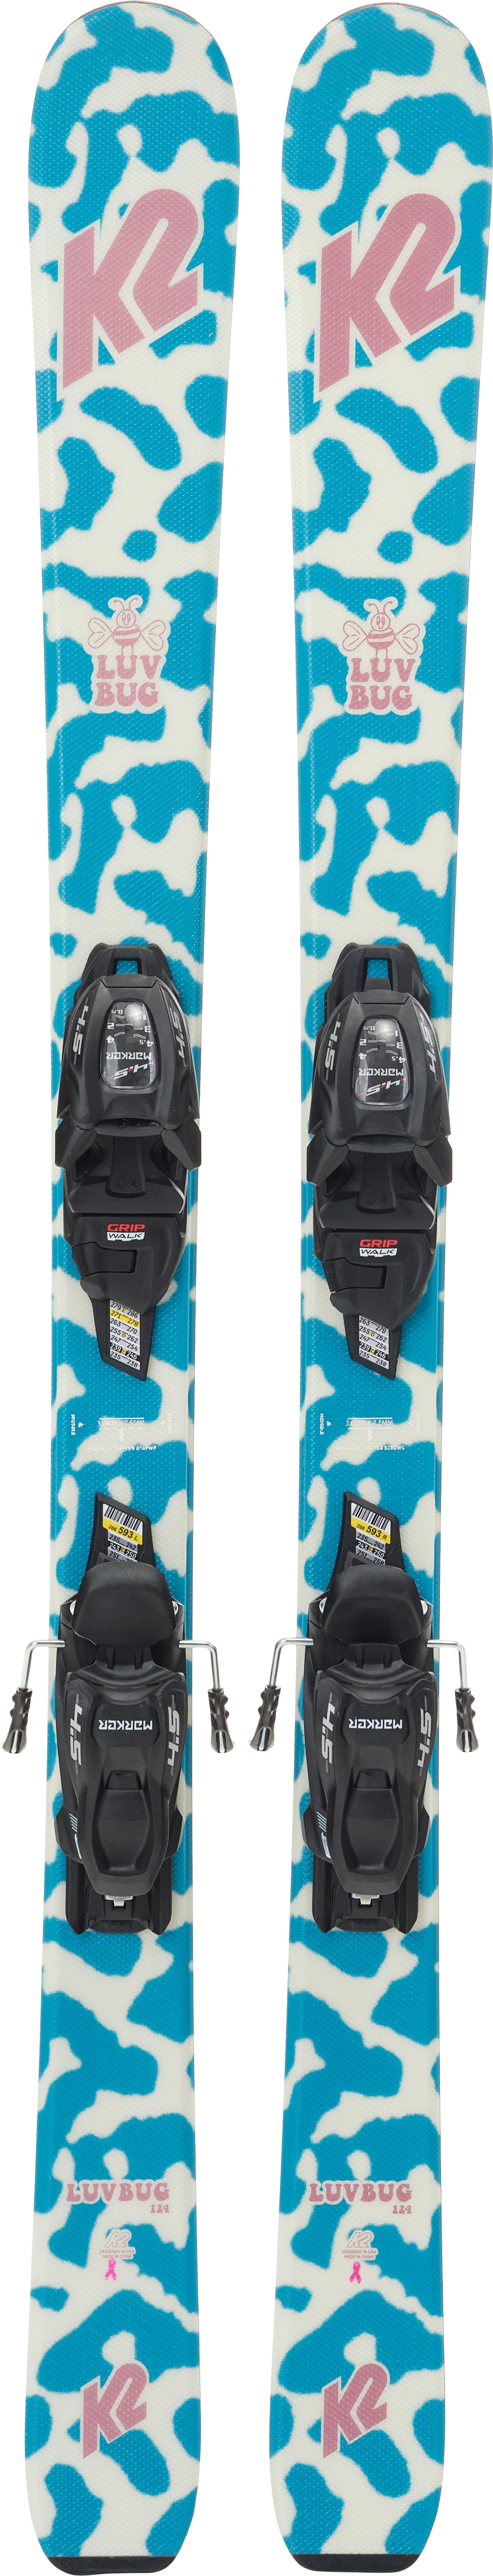 K2 Luv Bug Fdt 4.5 Skier inkl. Bindungen, 100 cm von K2